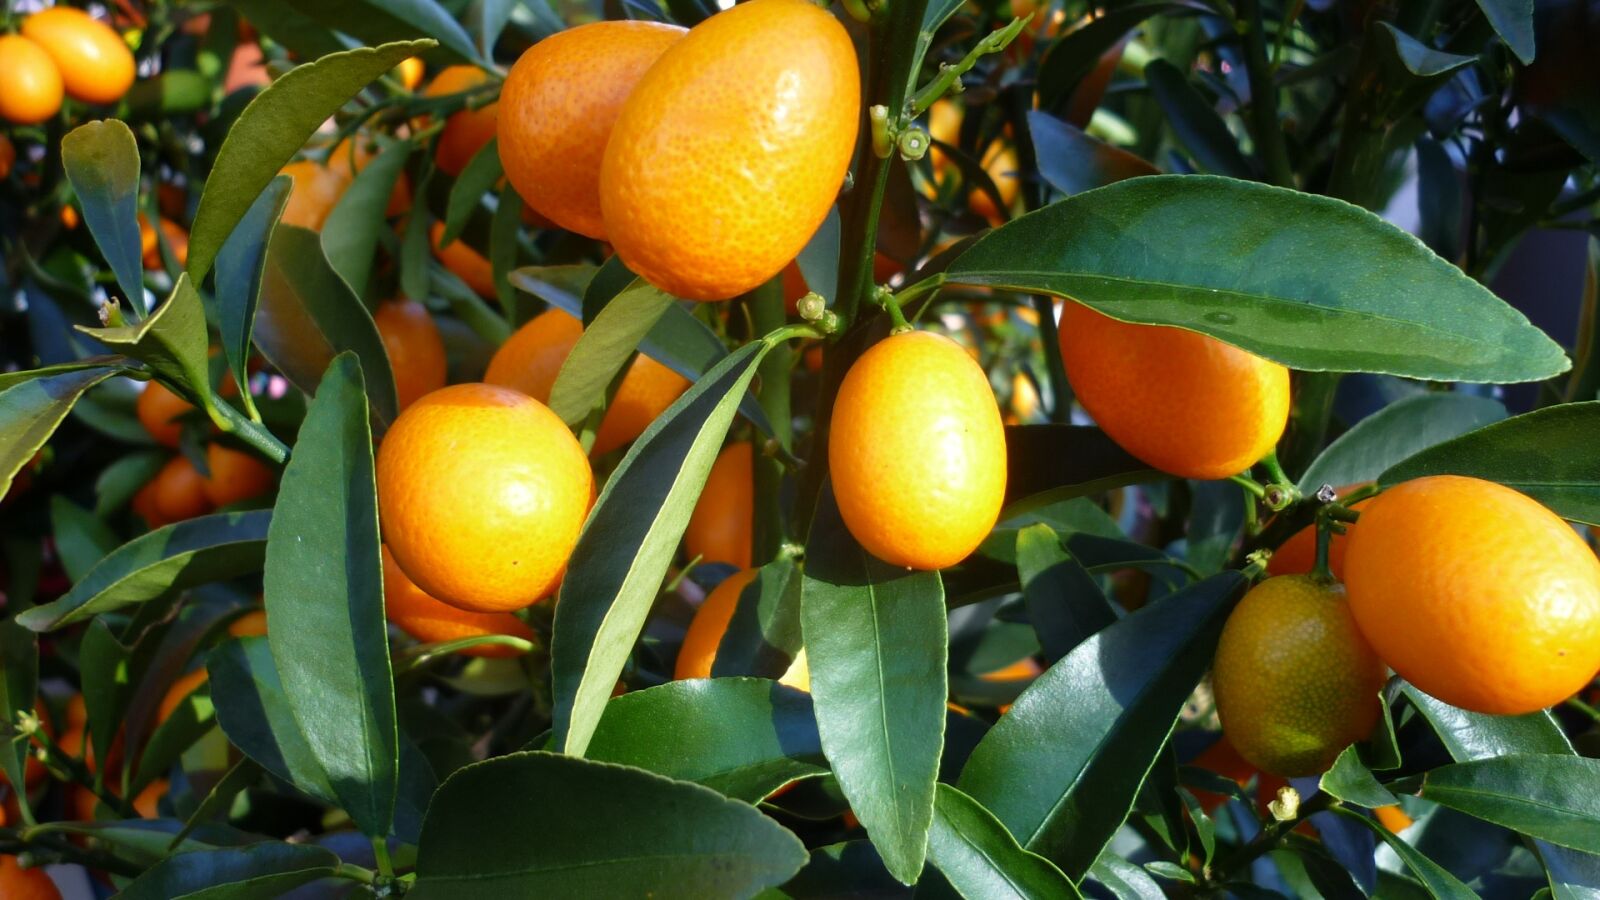 Panasonic Lumix DMC-FS6 sample photo. Fruit, orange, food photography